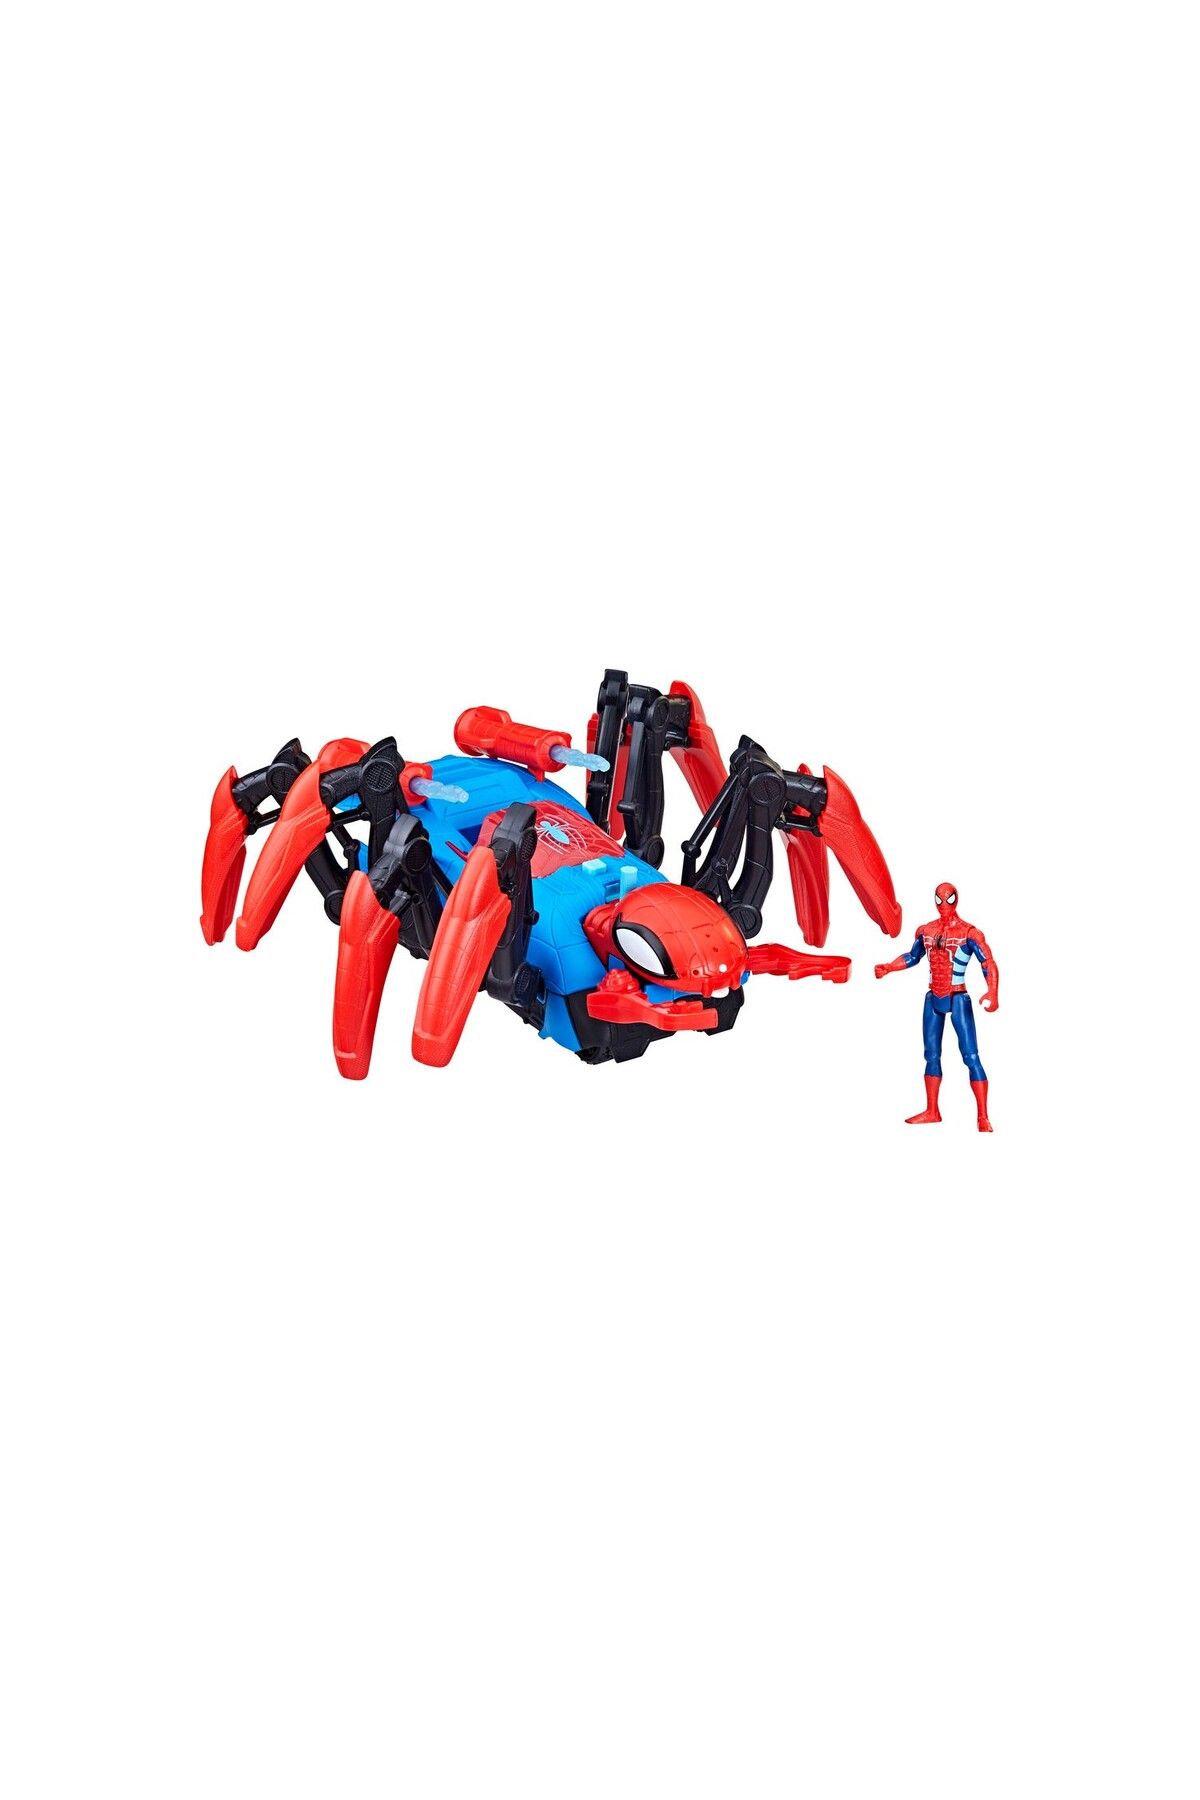 Hasbro Oyuncak Spiderman Su ve Dart Fırlatan Örümcek Araç F7845